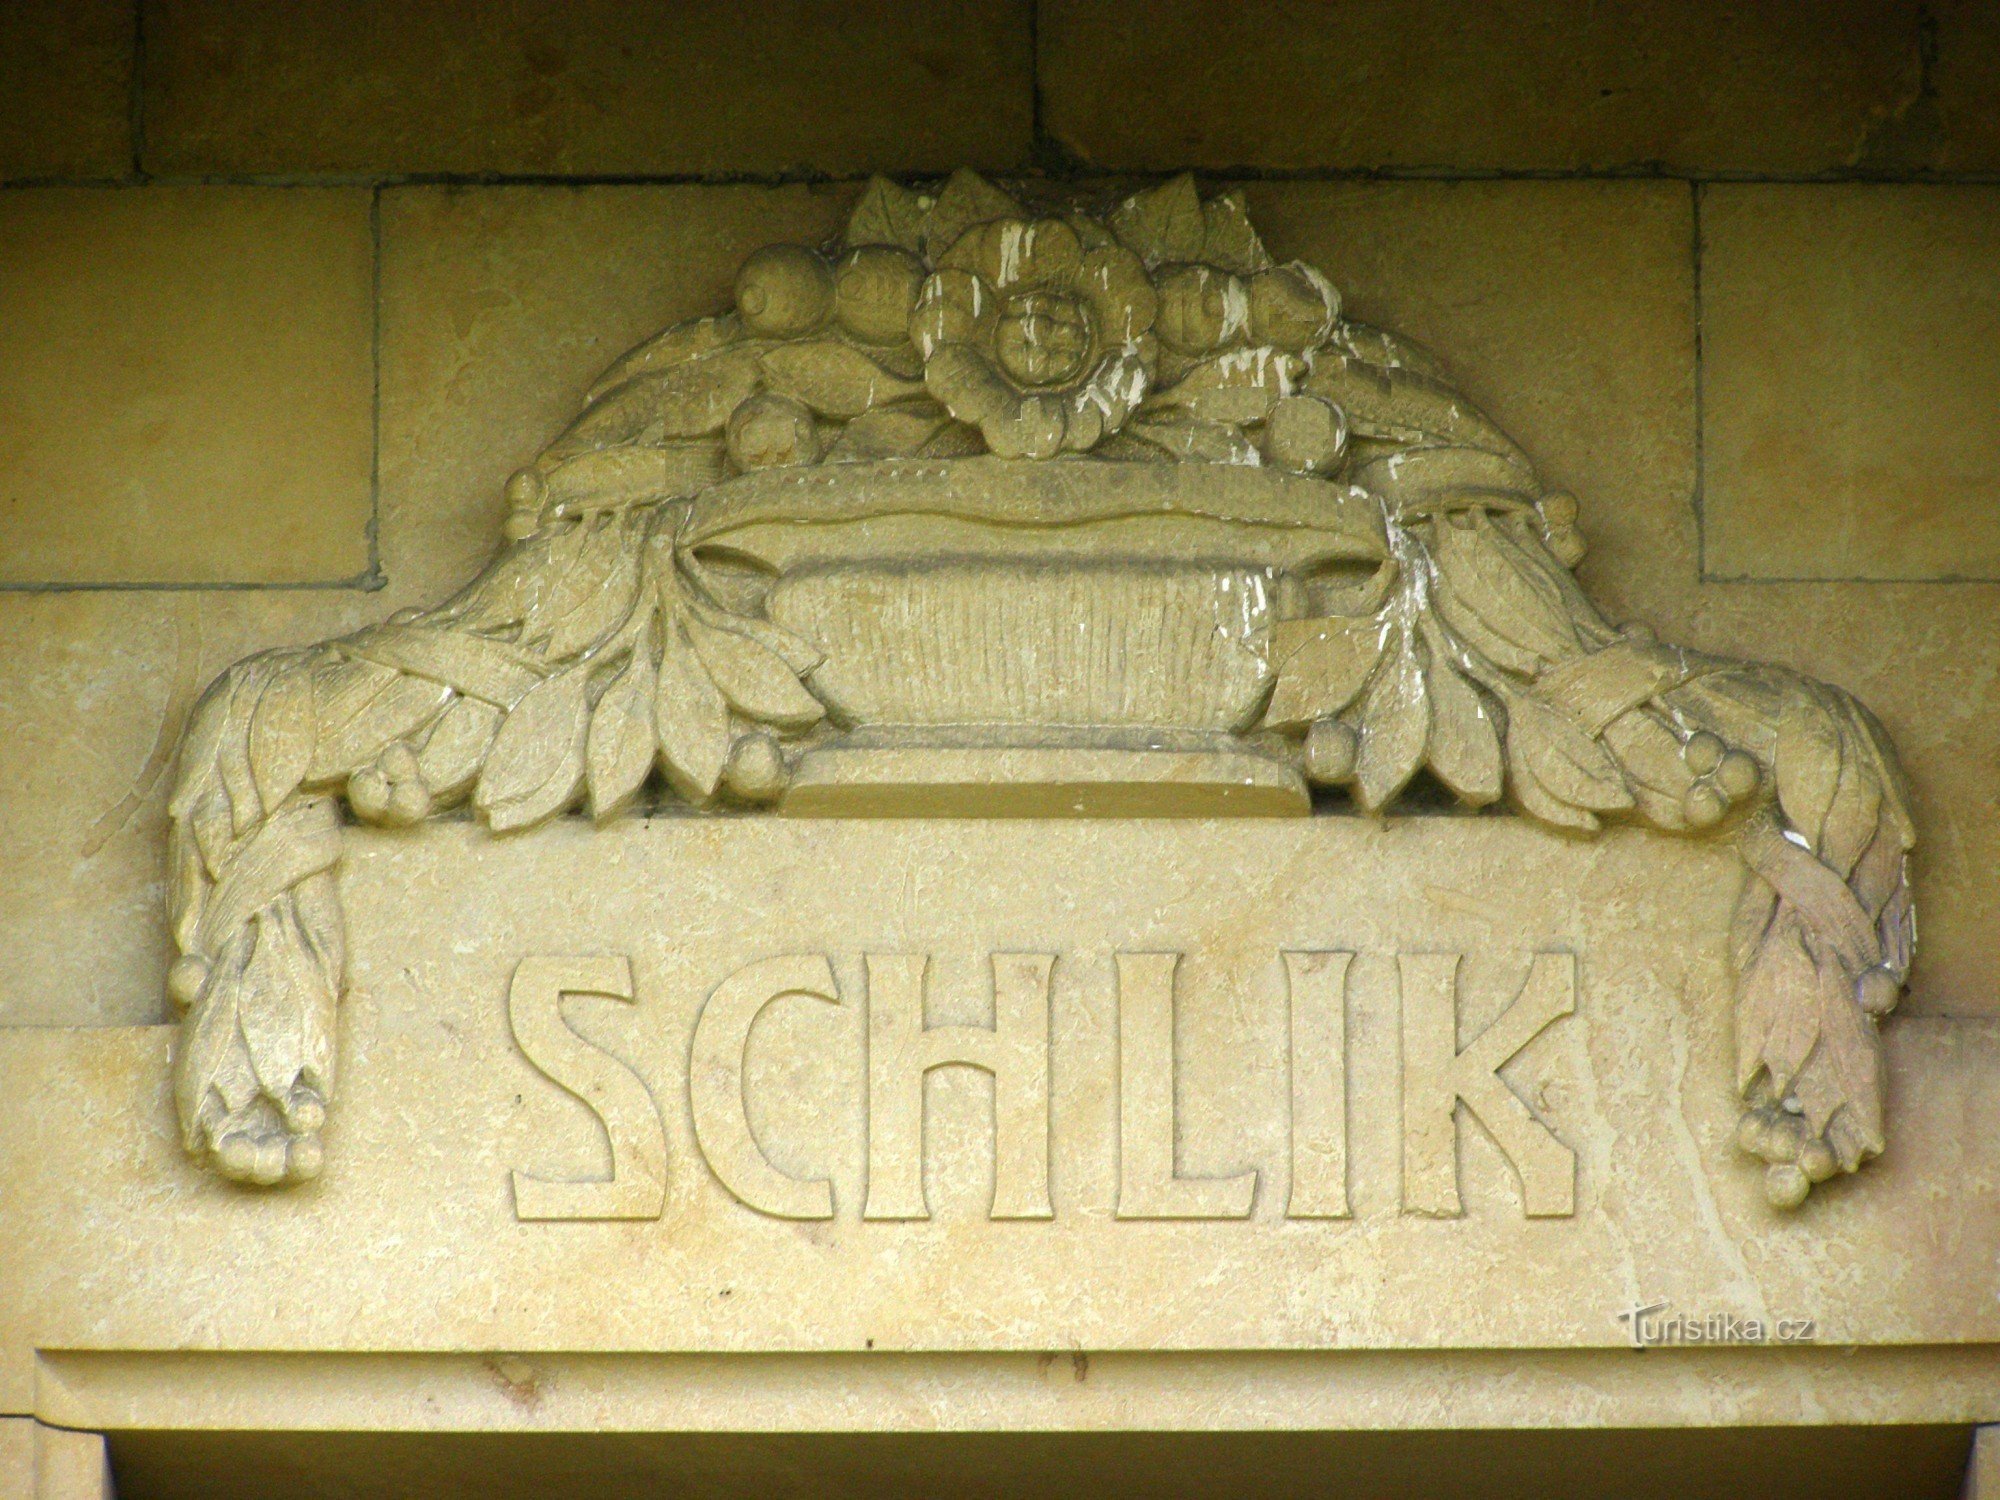 Veliš - mausoleum van de familie Schlik